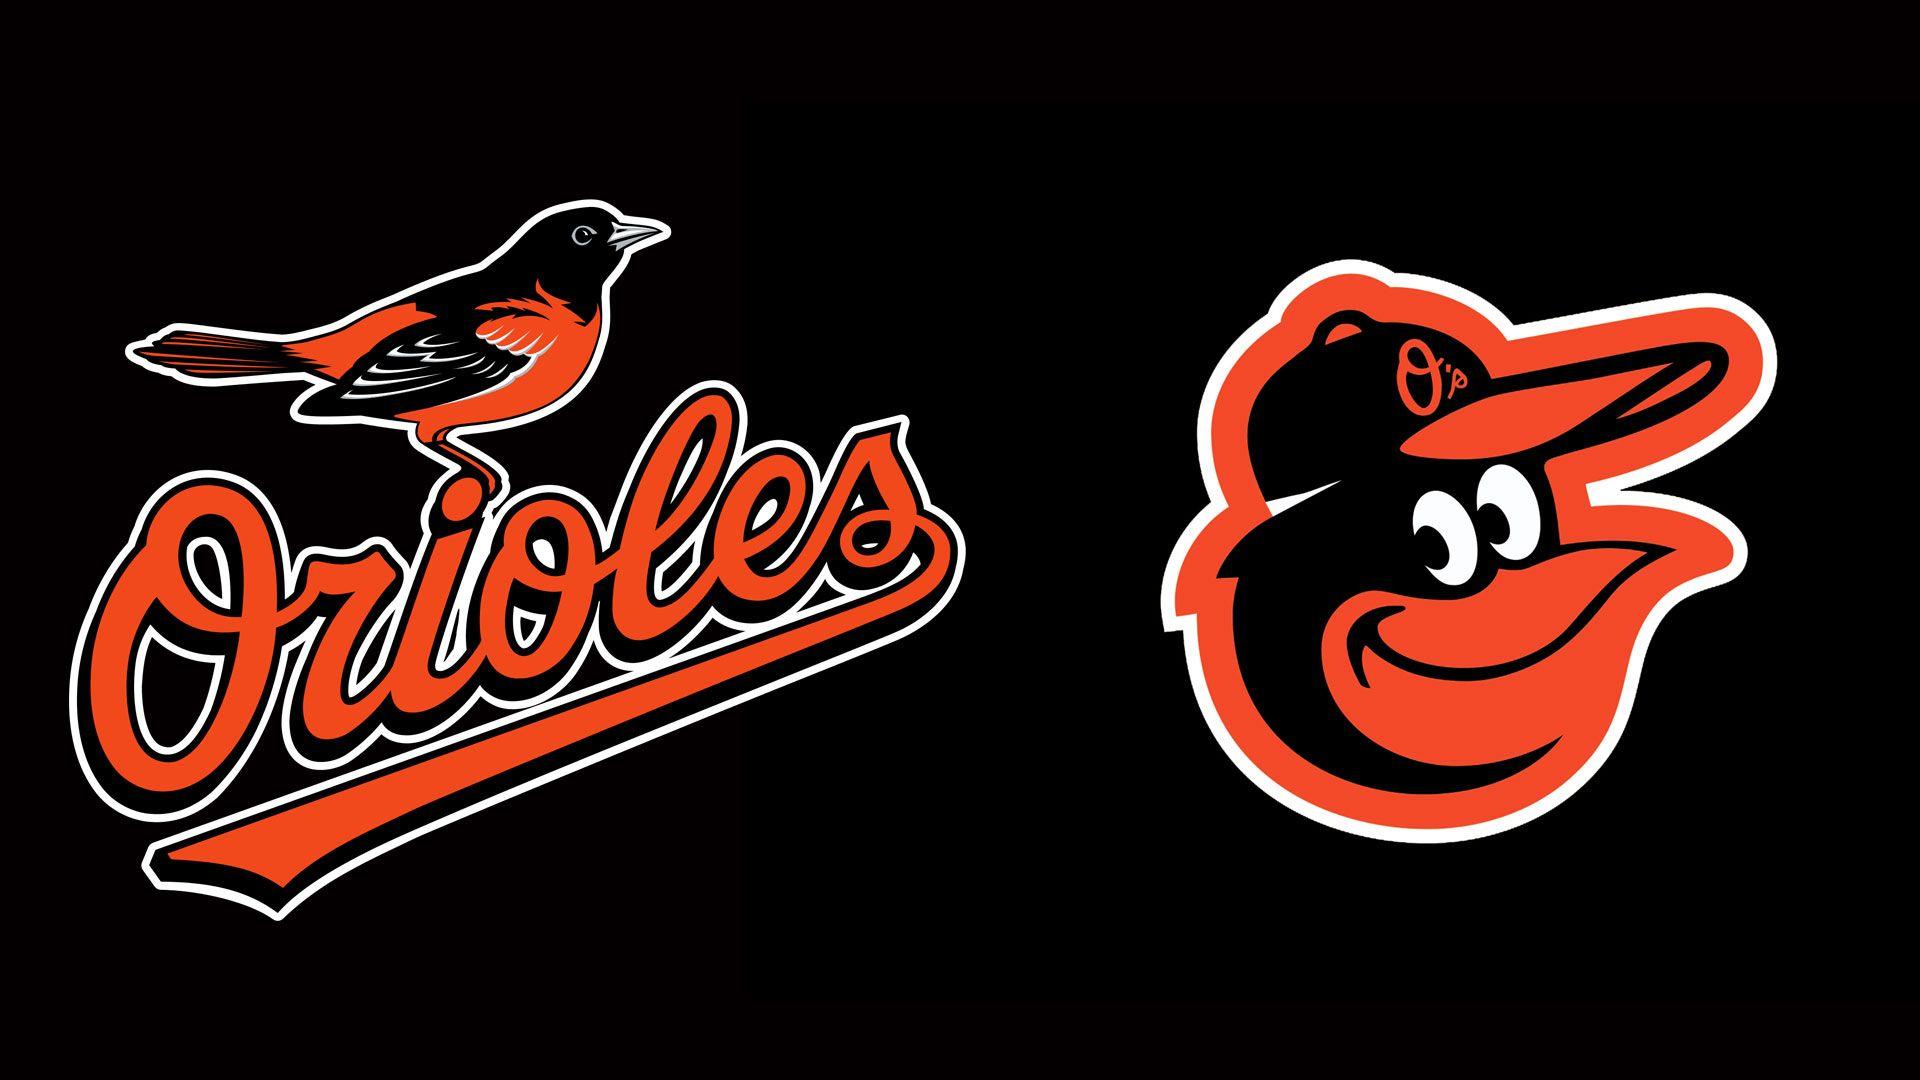 MLB Logo Team Baltimore Orioles wallpaper 2018 in Baseball